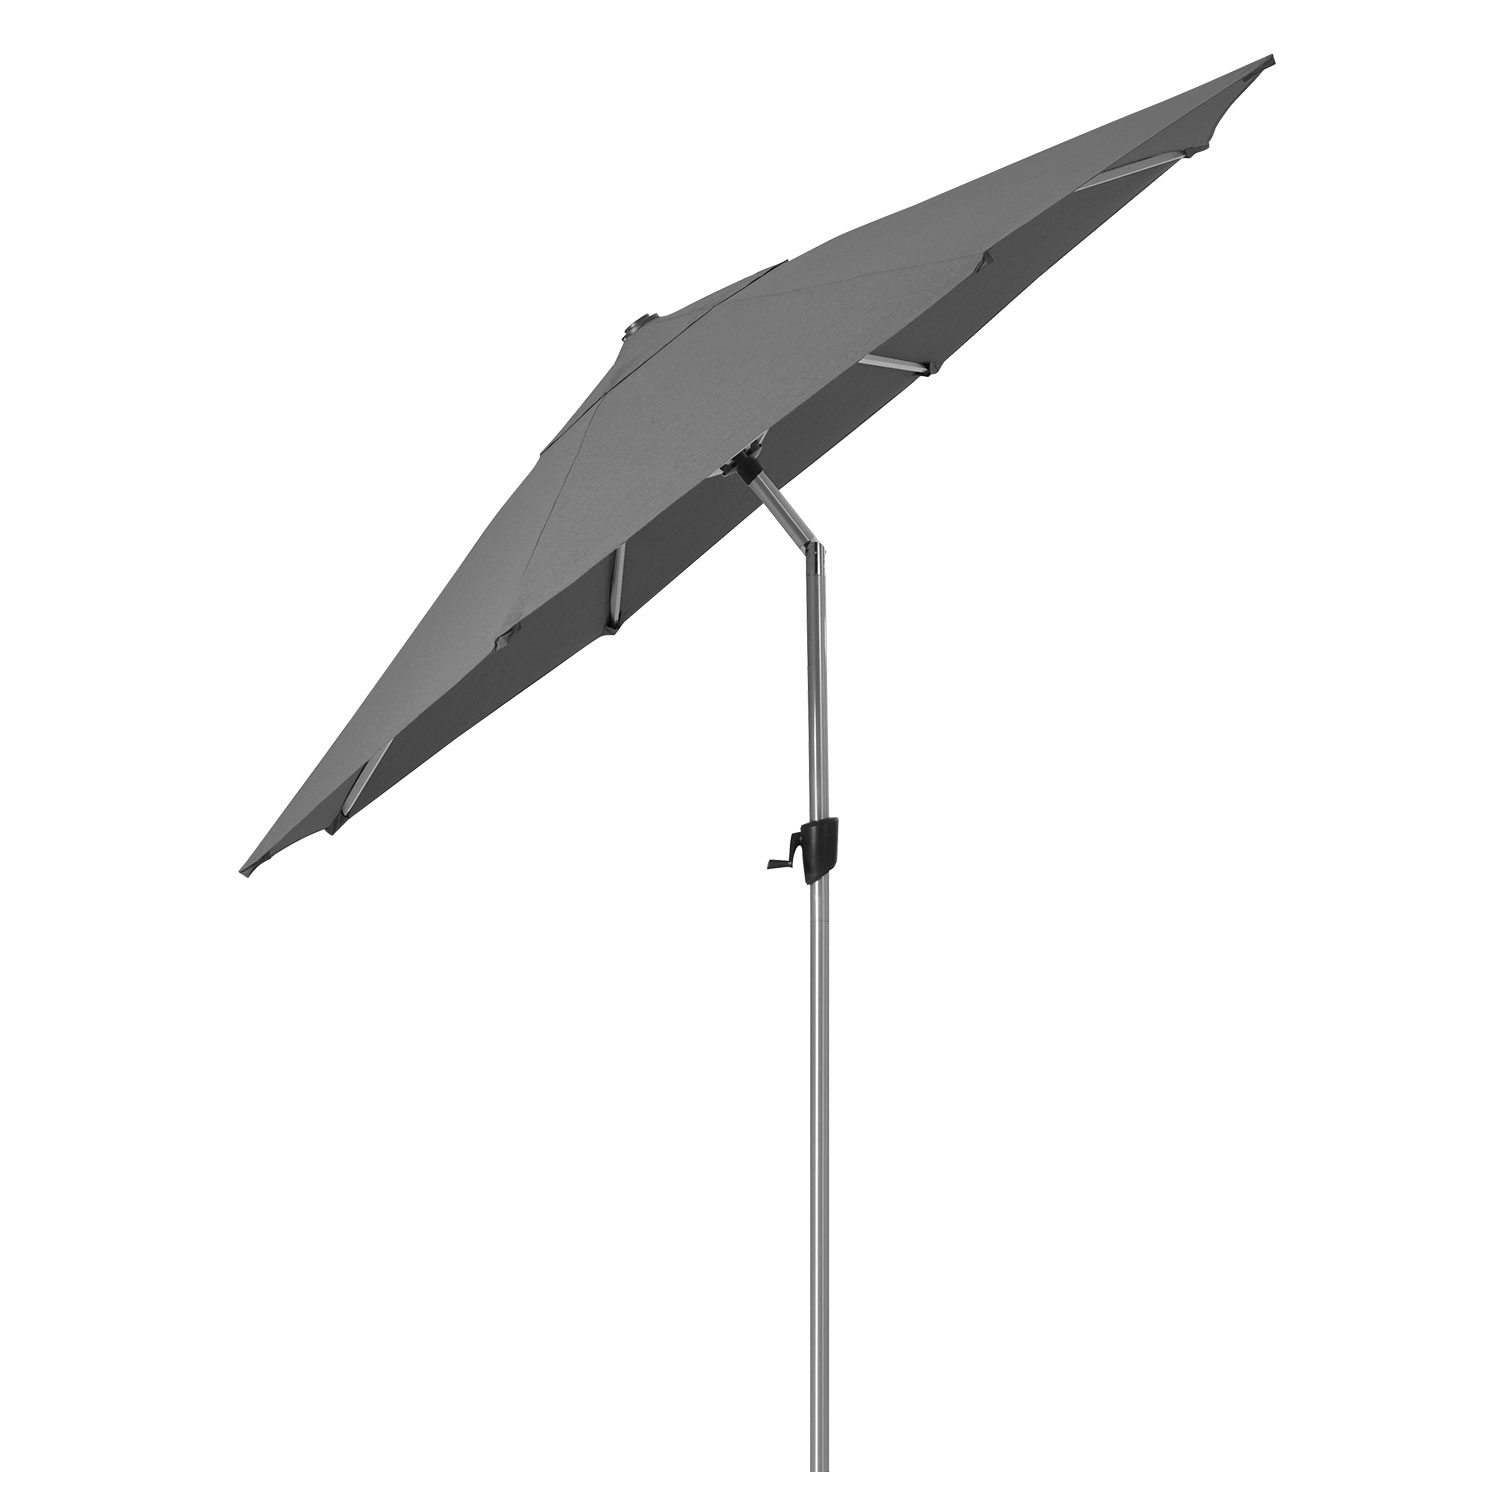 Cane-Line Sunshade parasoll 300 cm Anthracite